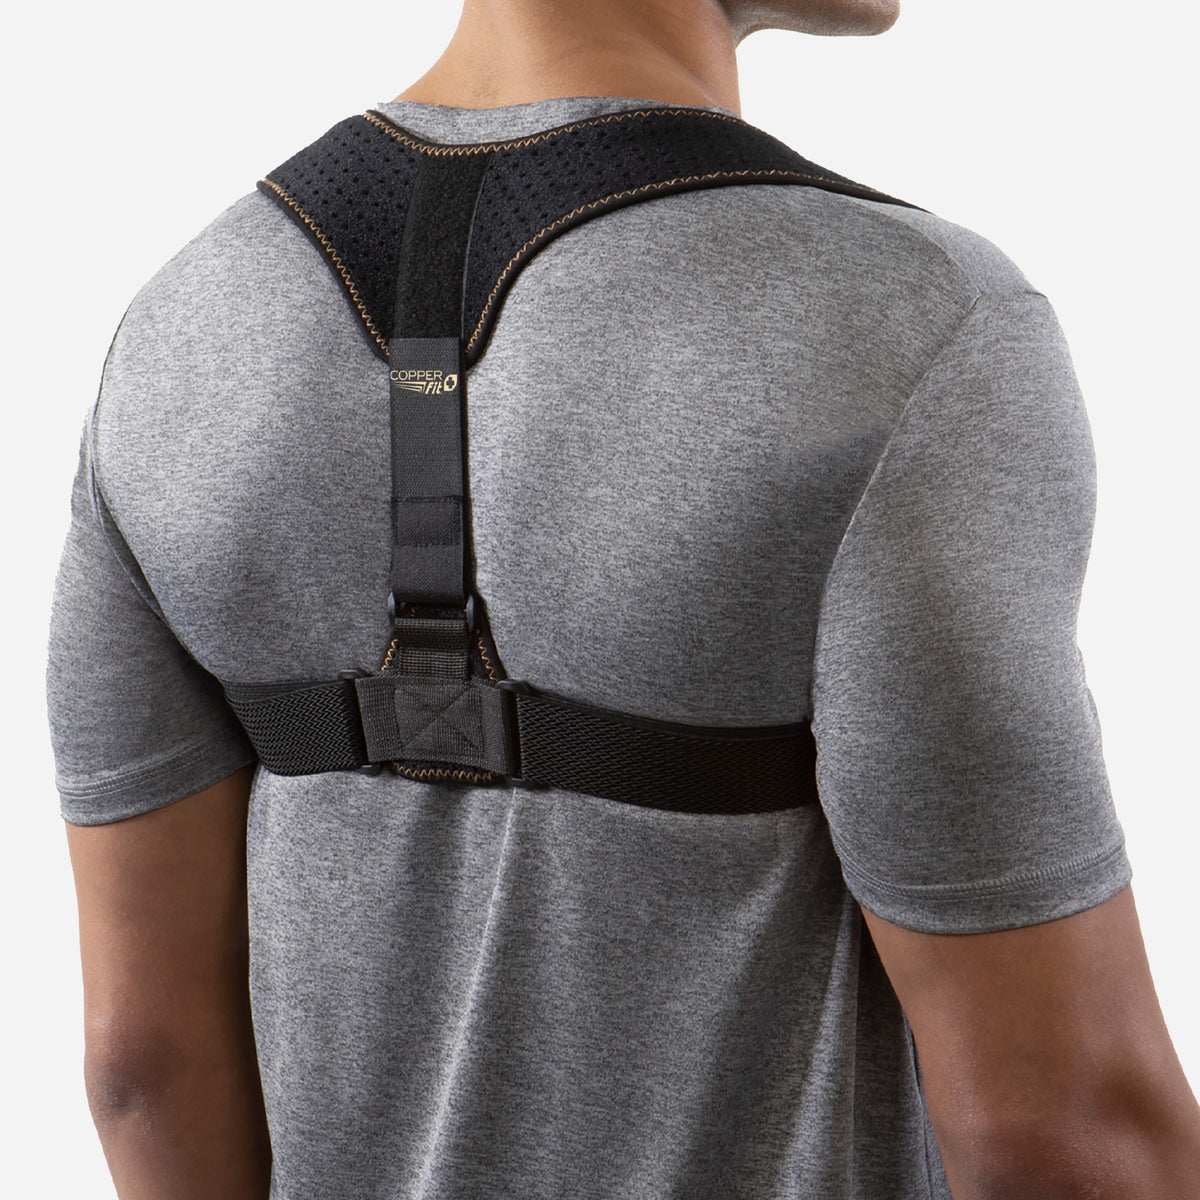 Medical Back Posture Corrector Shoulder Upper Neck Support Brace Belt Men  Women